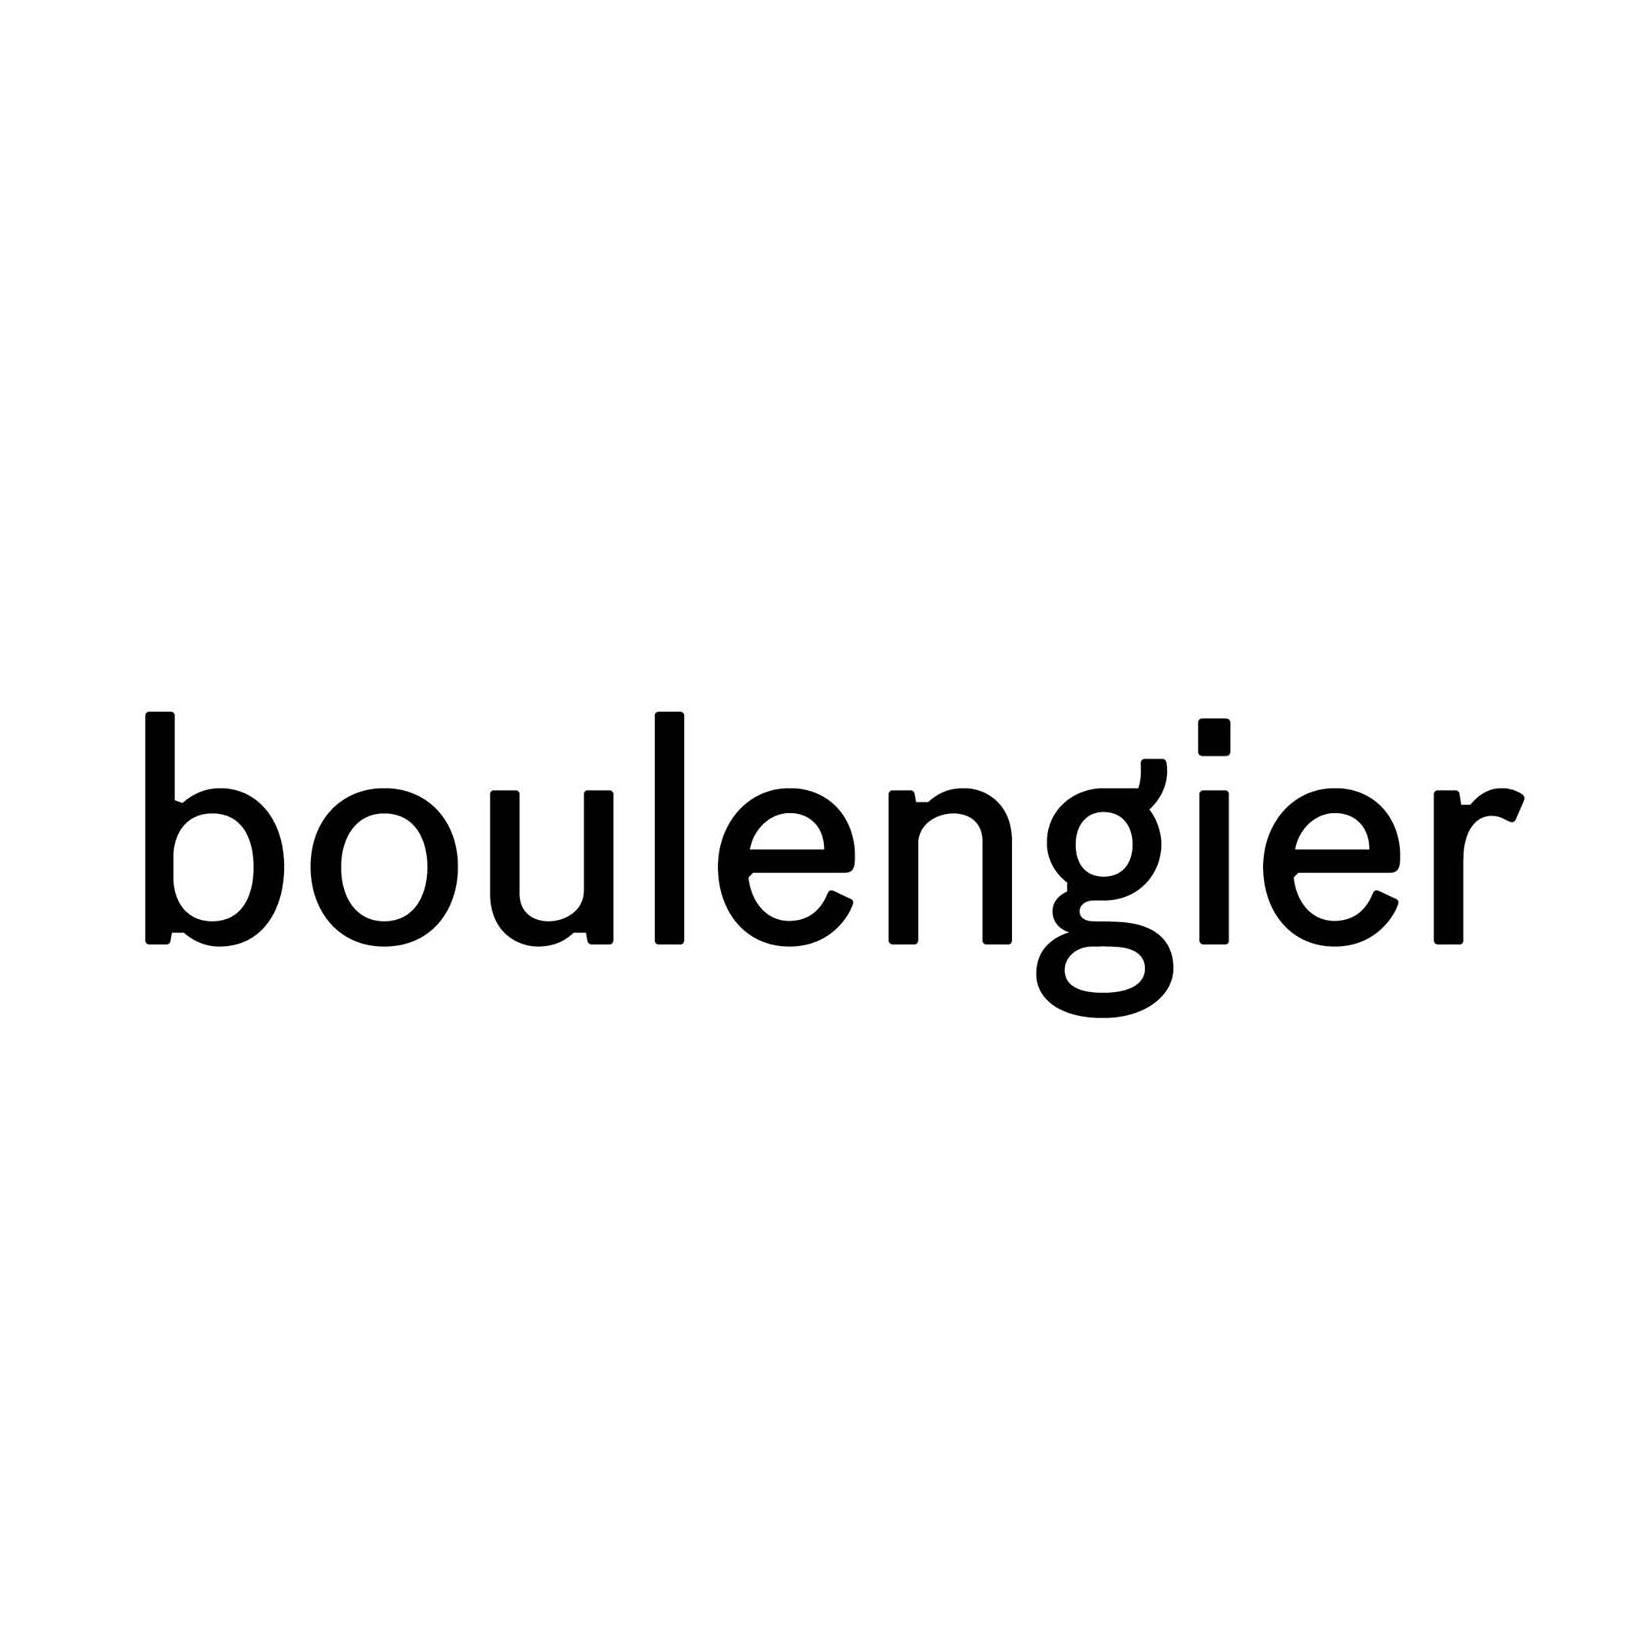 Boulengier